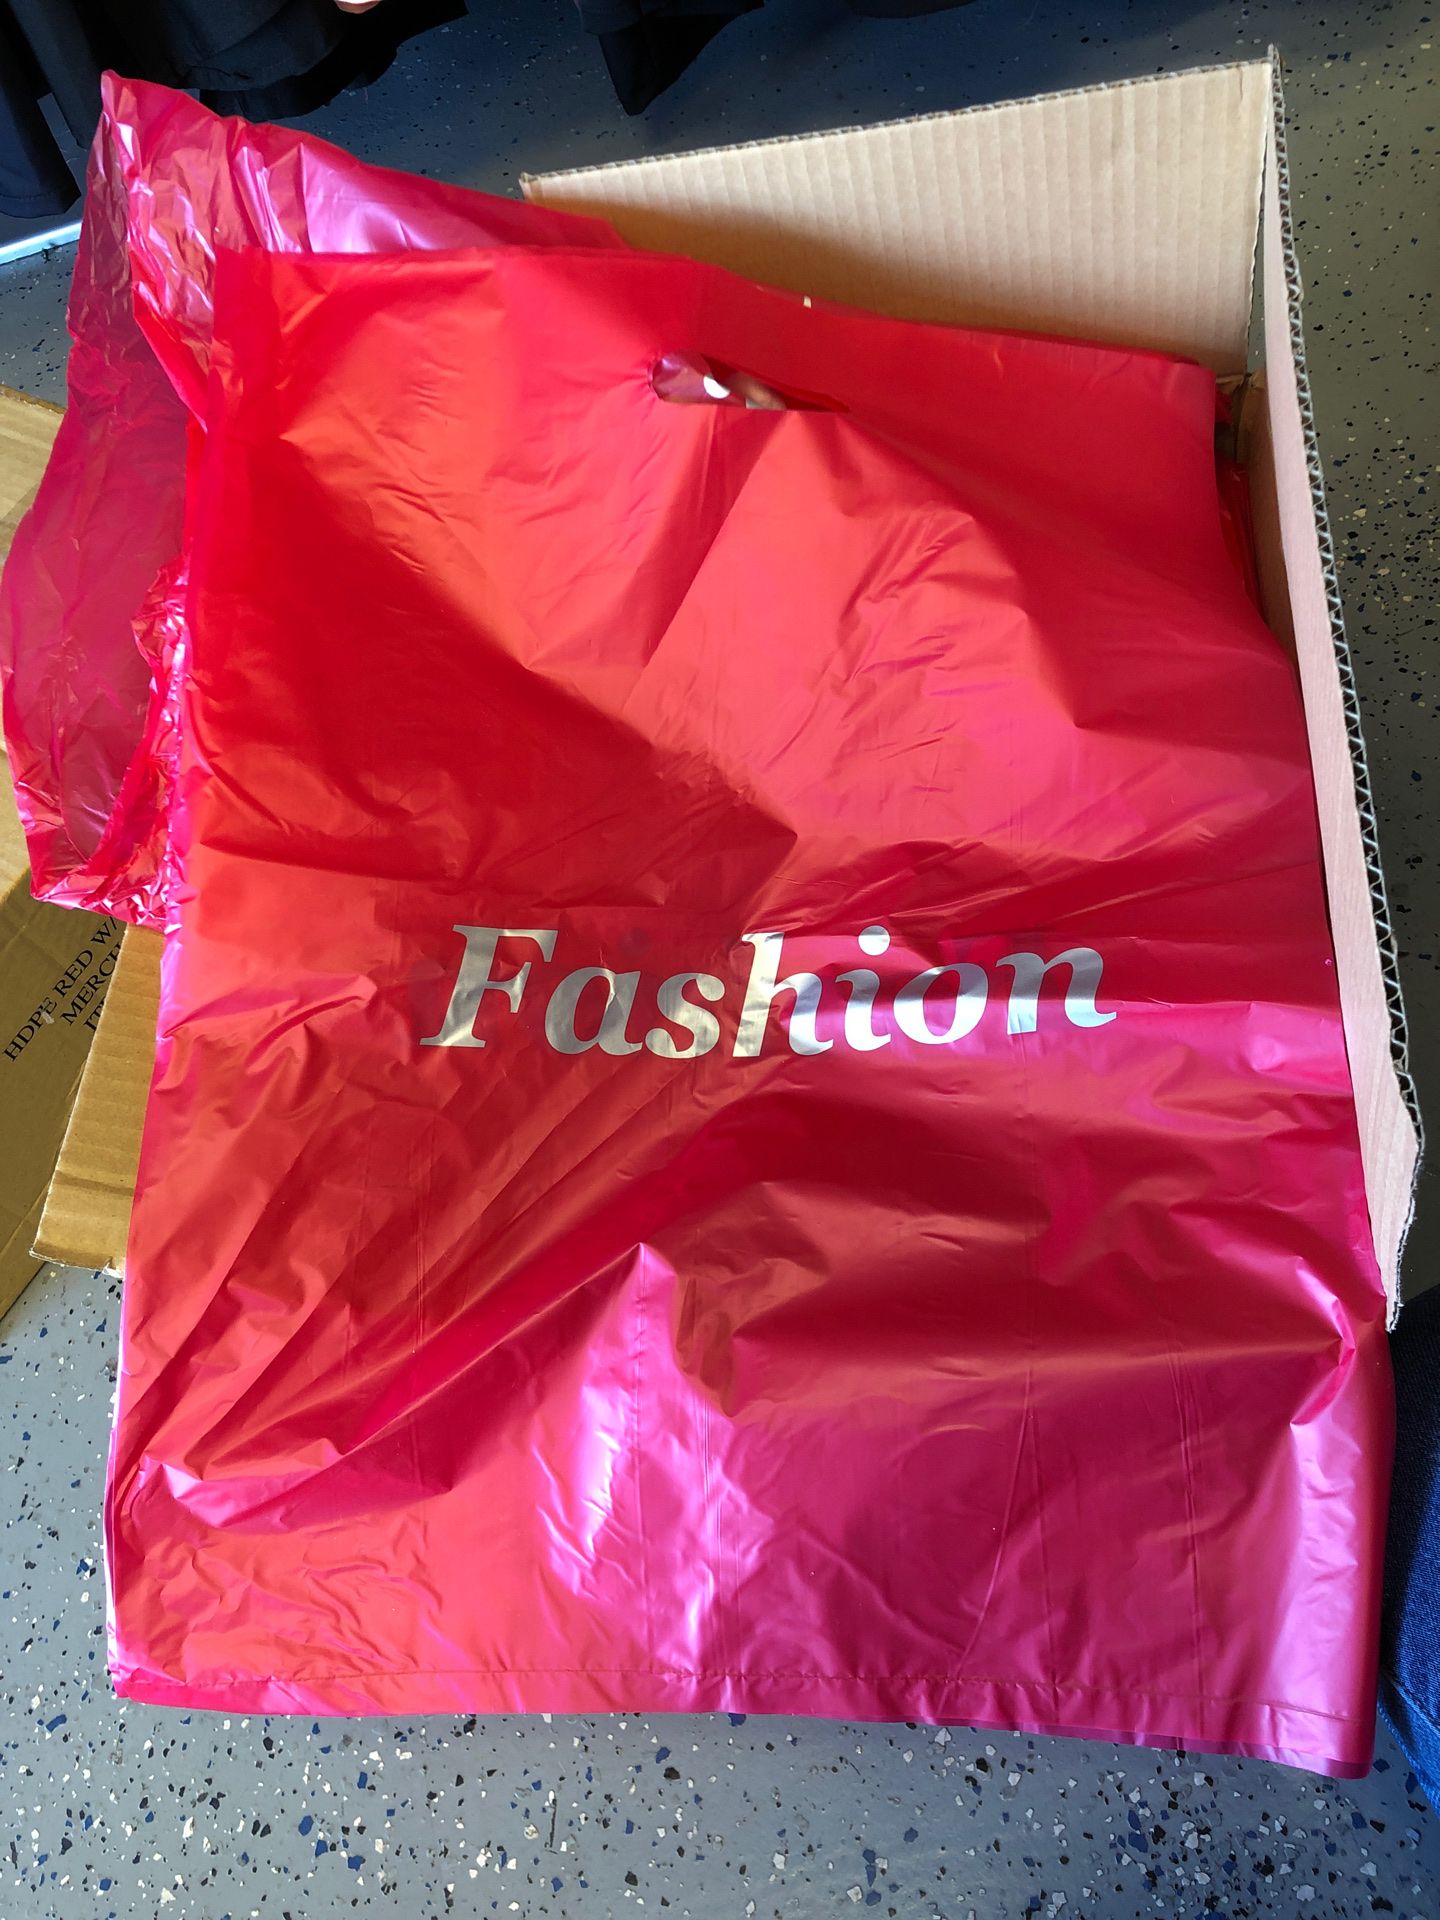 Box of 1000 plastic shopping retail bags